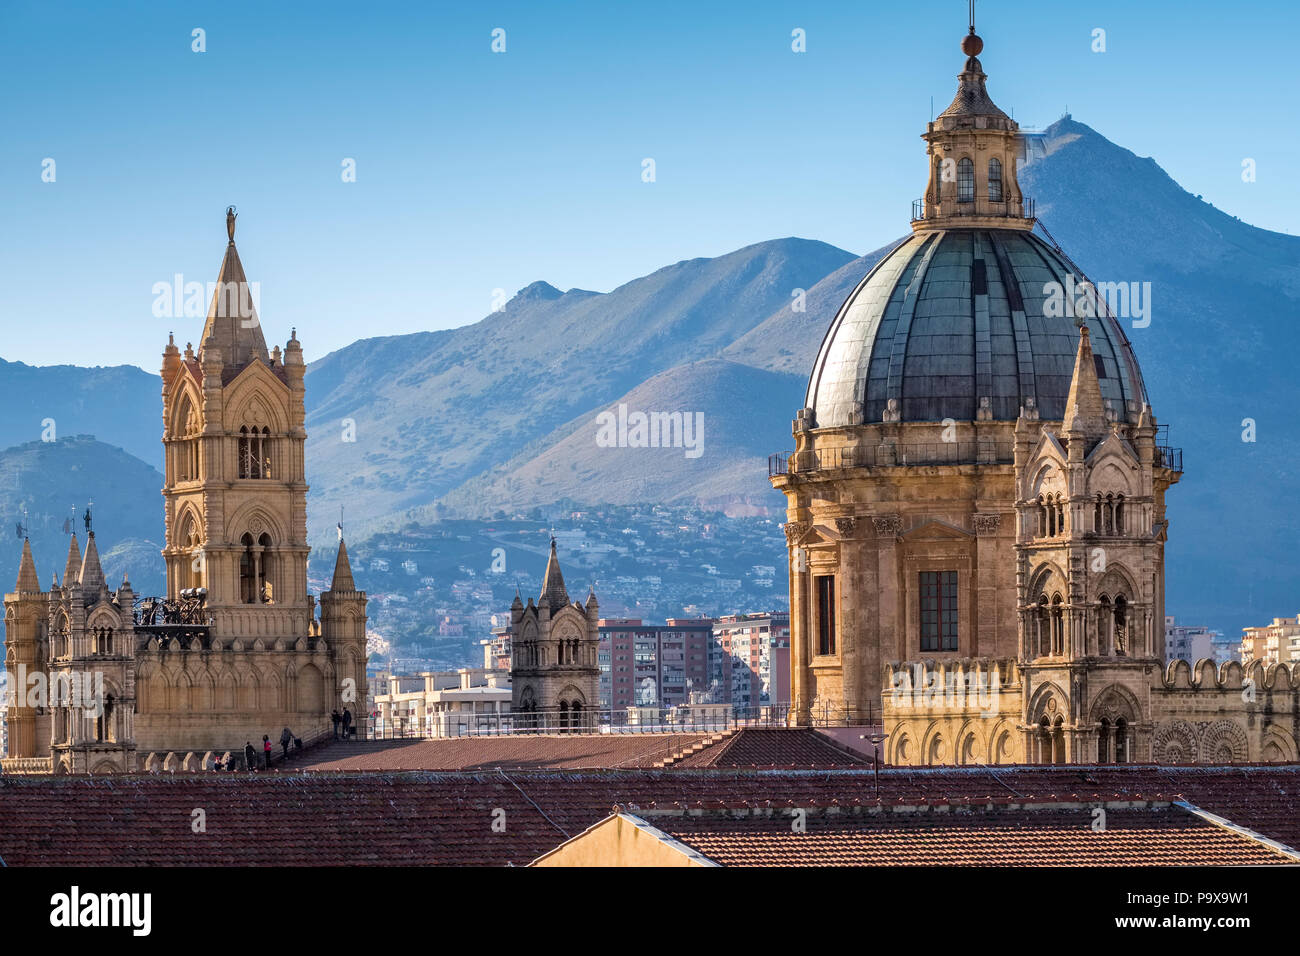 Sicilia, Italia - Ciudad de Palermo, Sicilia, Europa, mostrando la cúpula de la catedral de Palermo y arquitectura Foto de stock